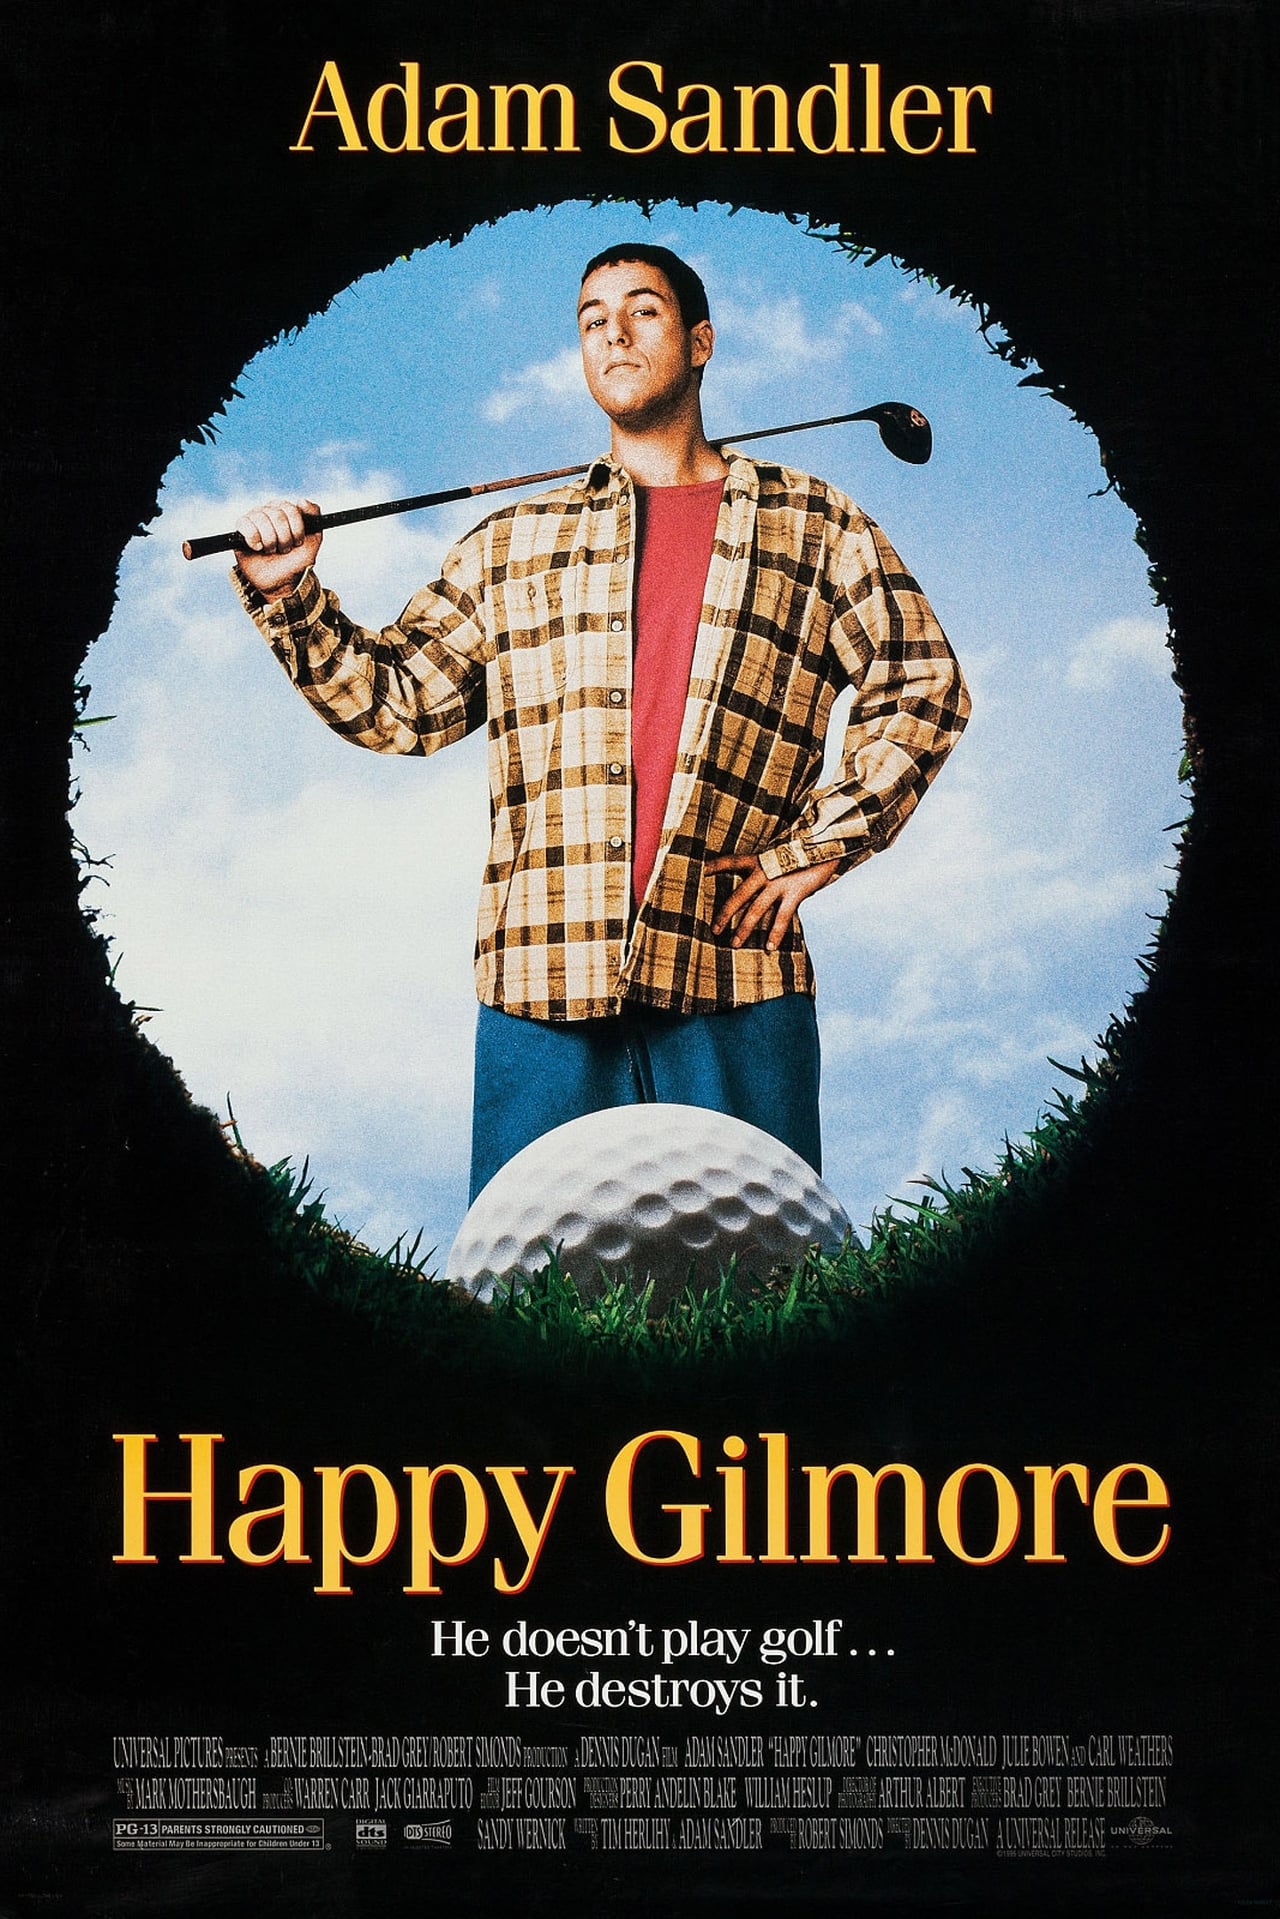 EN - Happy Gilmore (1996) - ADAM SANDLER